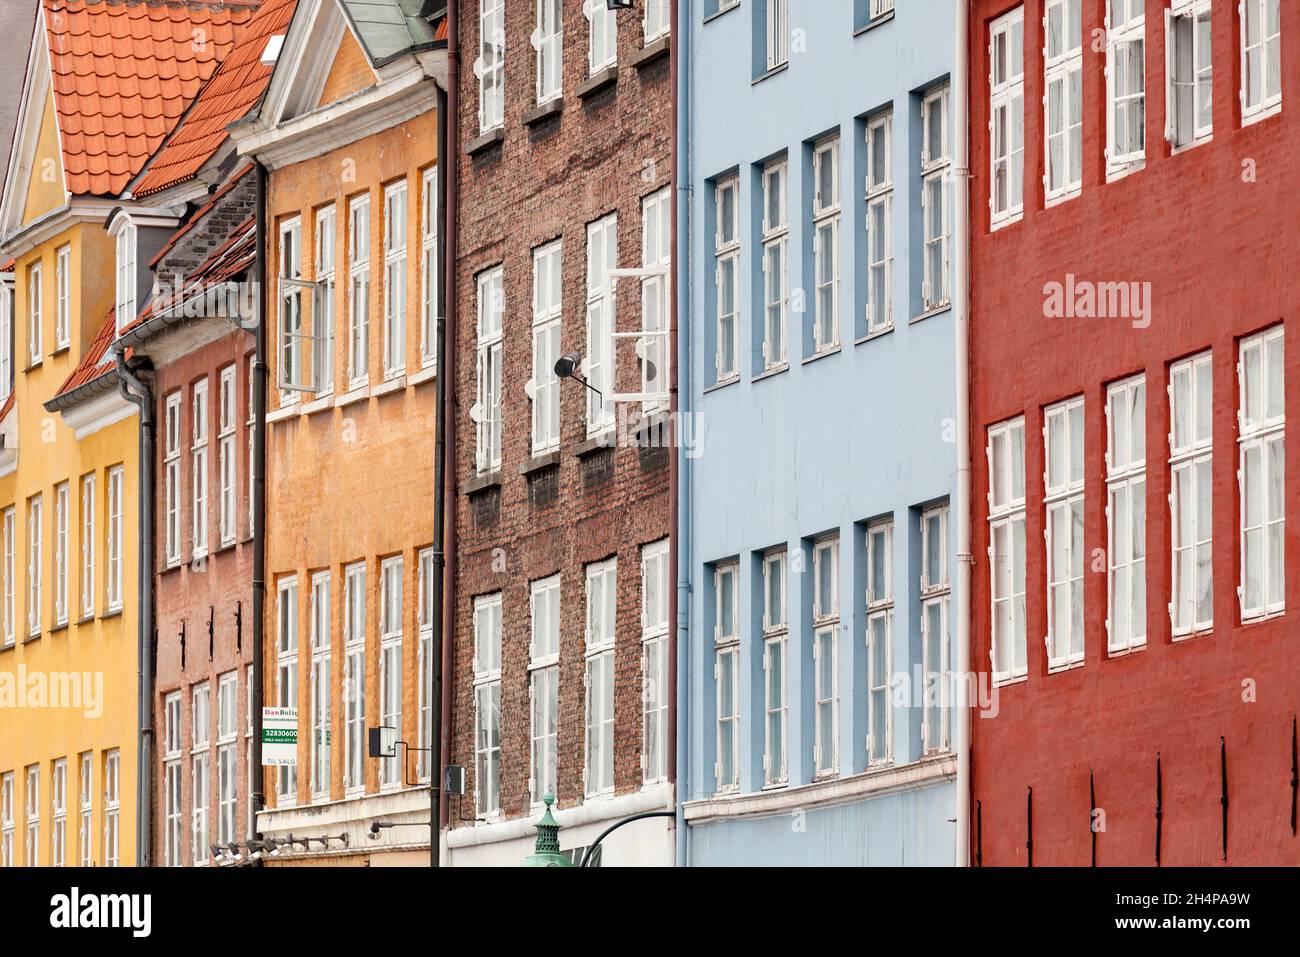 Nyhavn è un famoso lungomare, canale e quartiere dei divertimenti di Copenhagen, Danimarca. Fiancheggiato da colori vivaci 17 e 18 Foto Stock